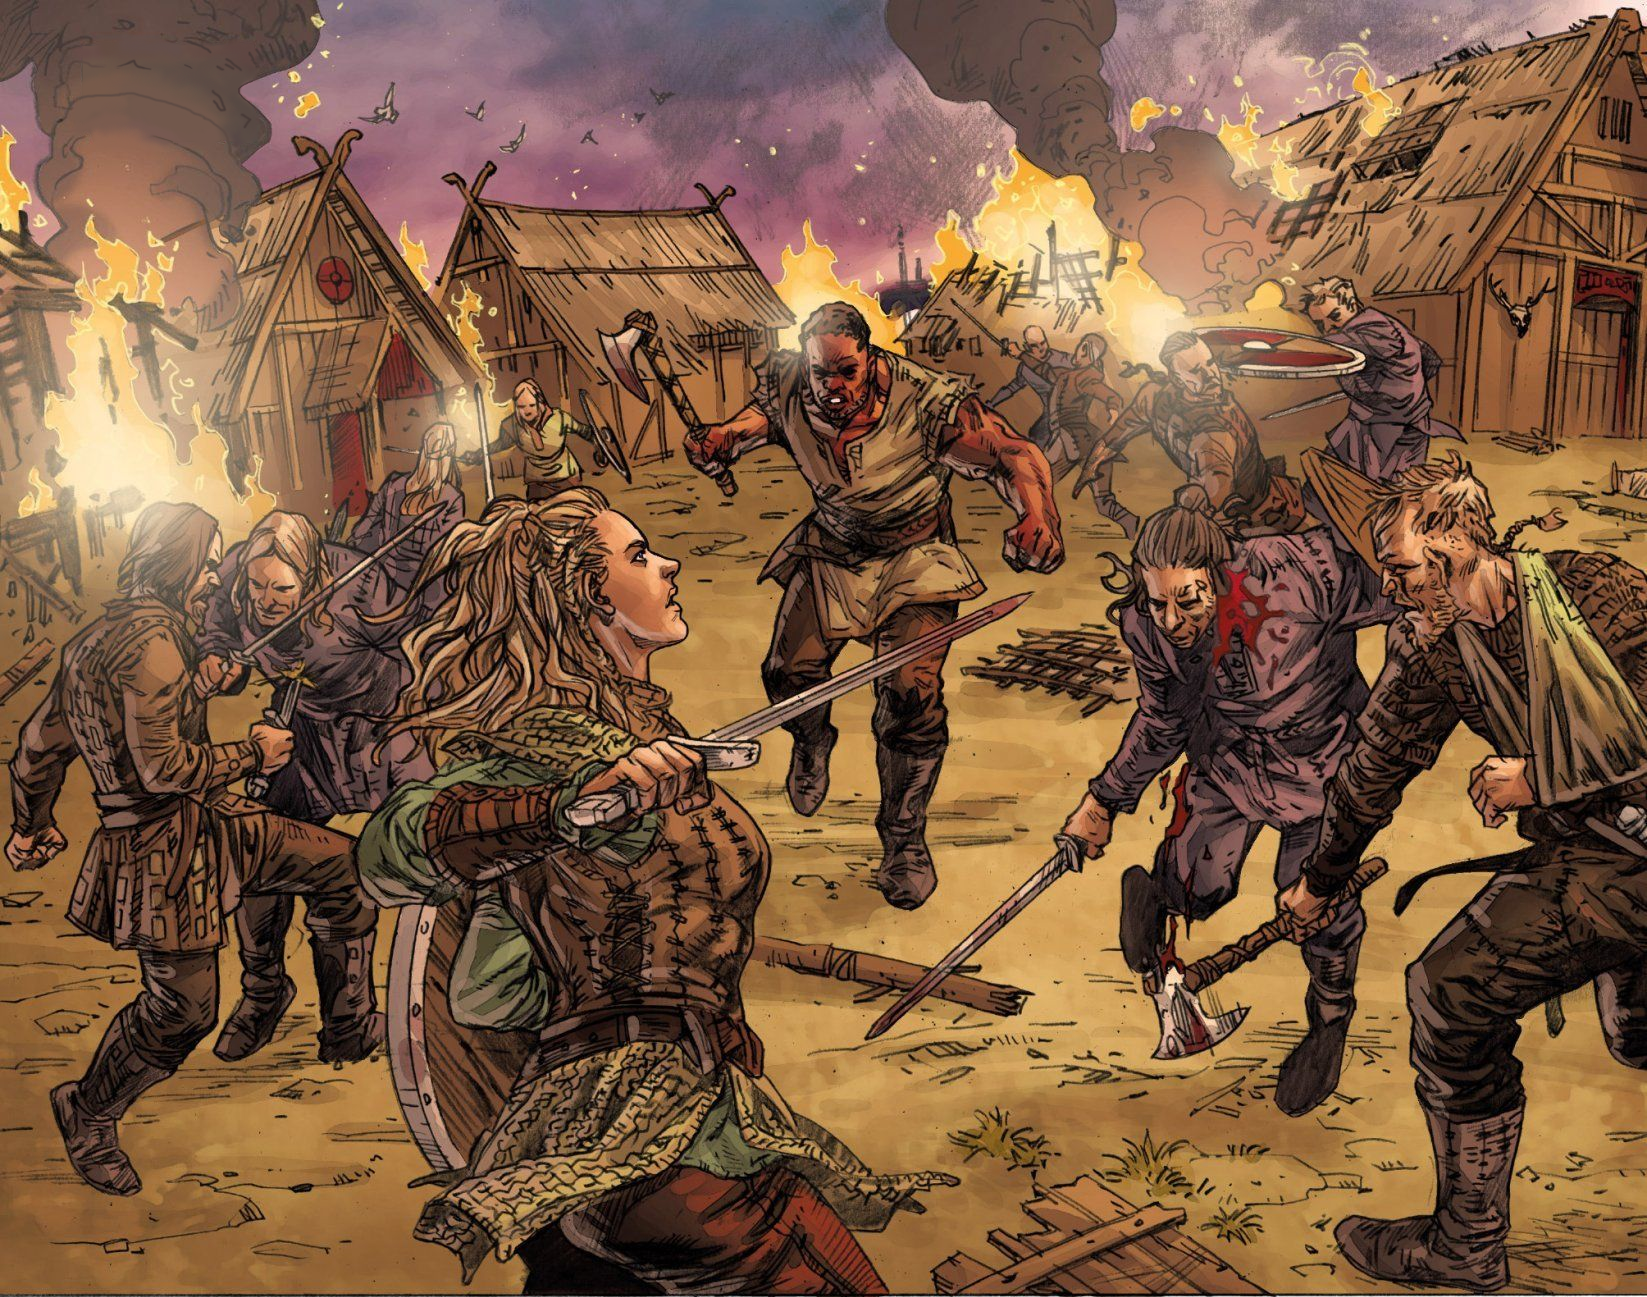 Нападение на город. Ютландия Викинги. Скандинавия Викинги штурмуют. Викинги атакуют. Средневековье арт.